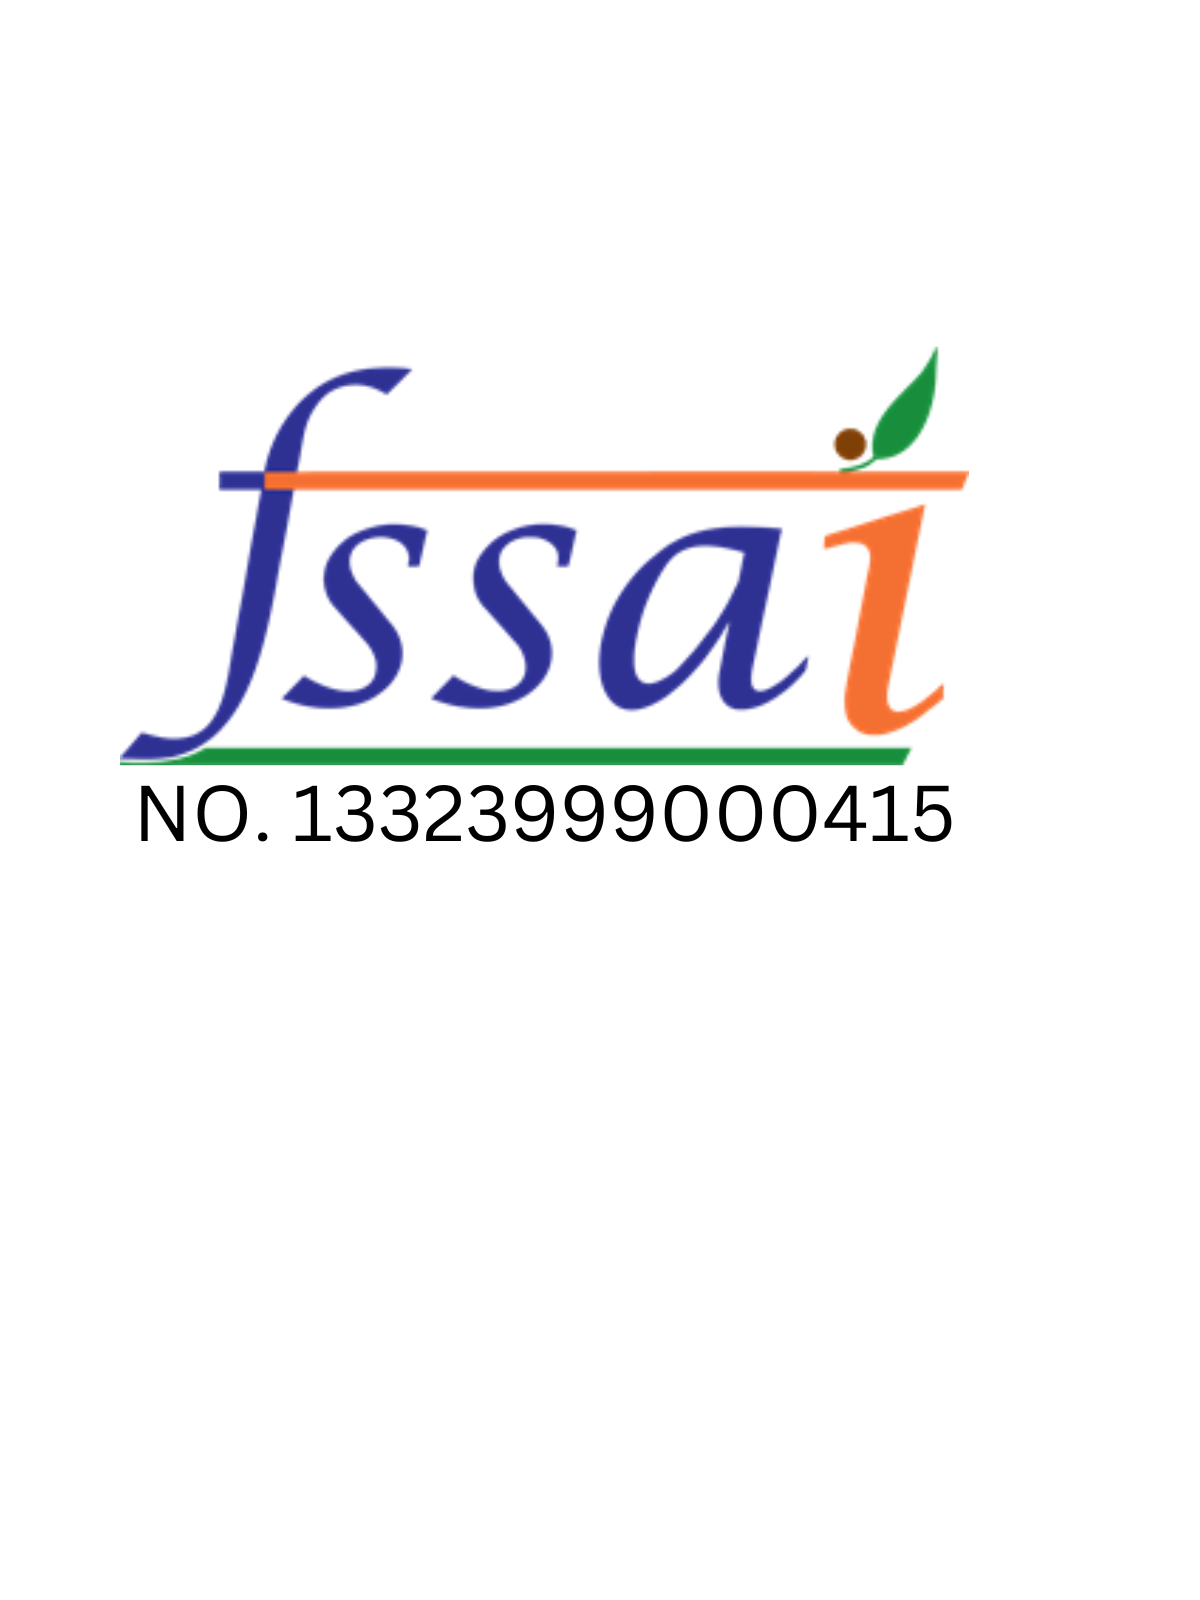 Fssai number of Farmonics